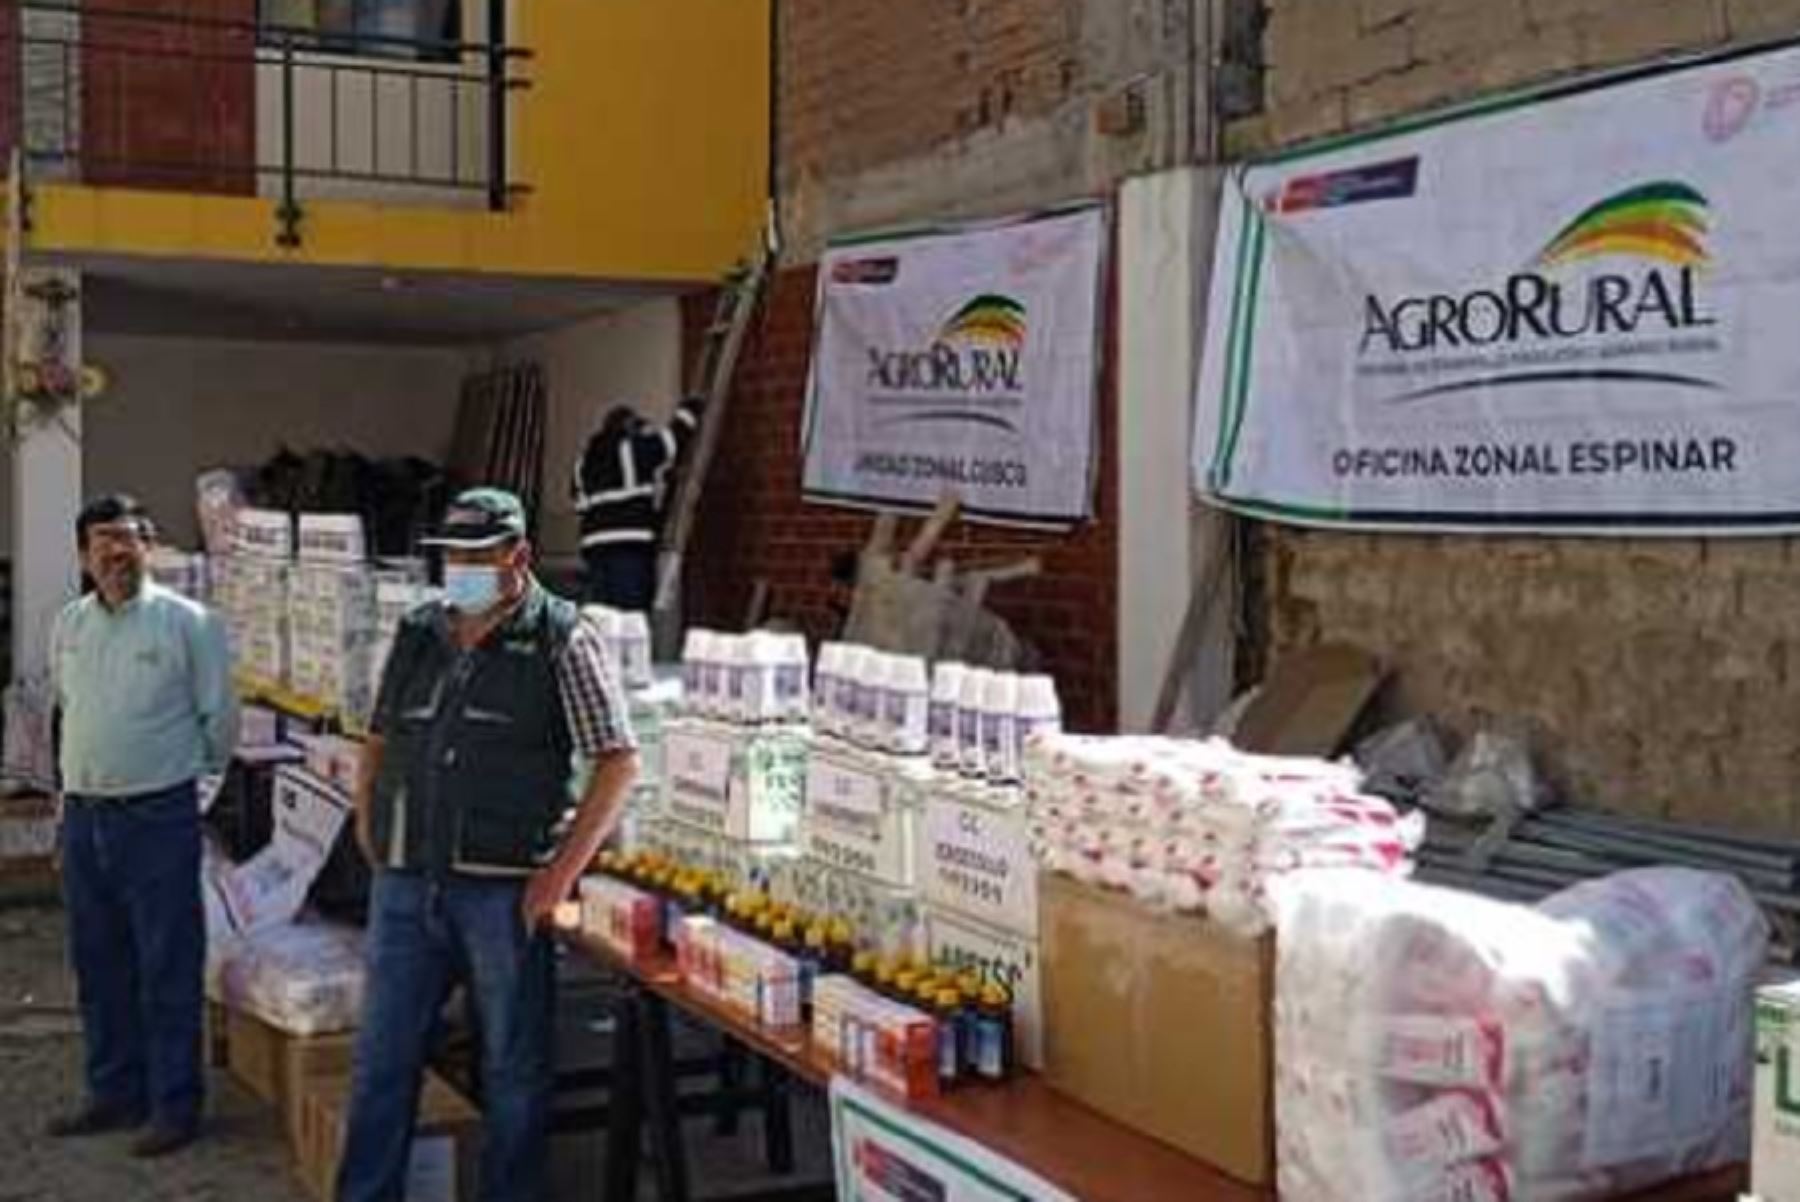 Agro Rural entregó un total de 37 kits de abono foliar a los pequeños agricultores de los centros poblados de Huarangopampa e Higuerones, del distrito de El Milagro, provincia de Utcubamba, en la región Amazonas, quienes fueron afectados por intensas lluvias ocurridas entre los meses de marzo y abril de este año.